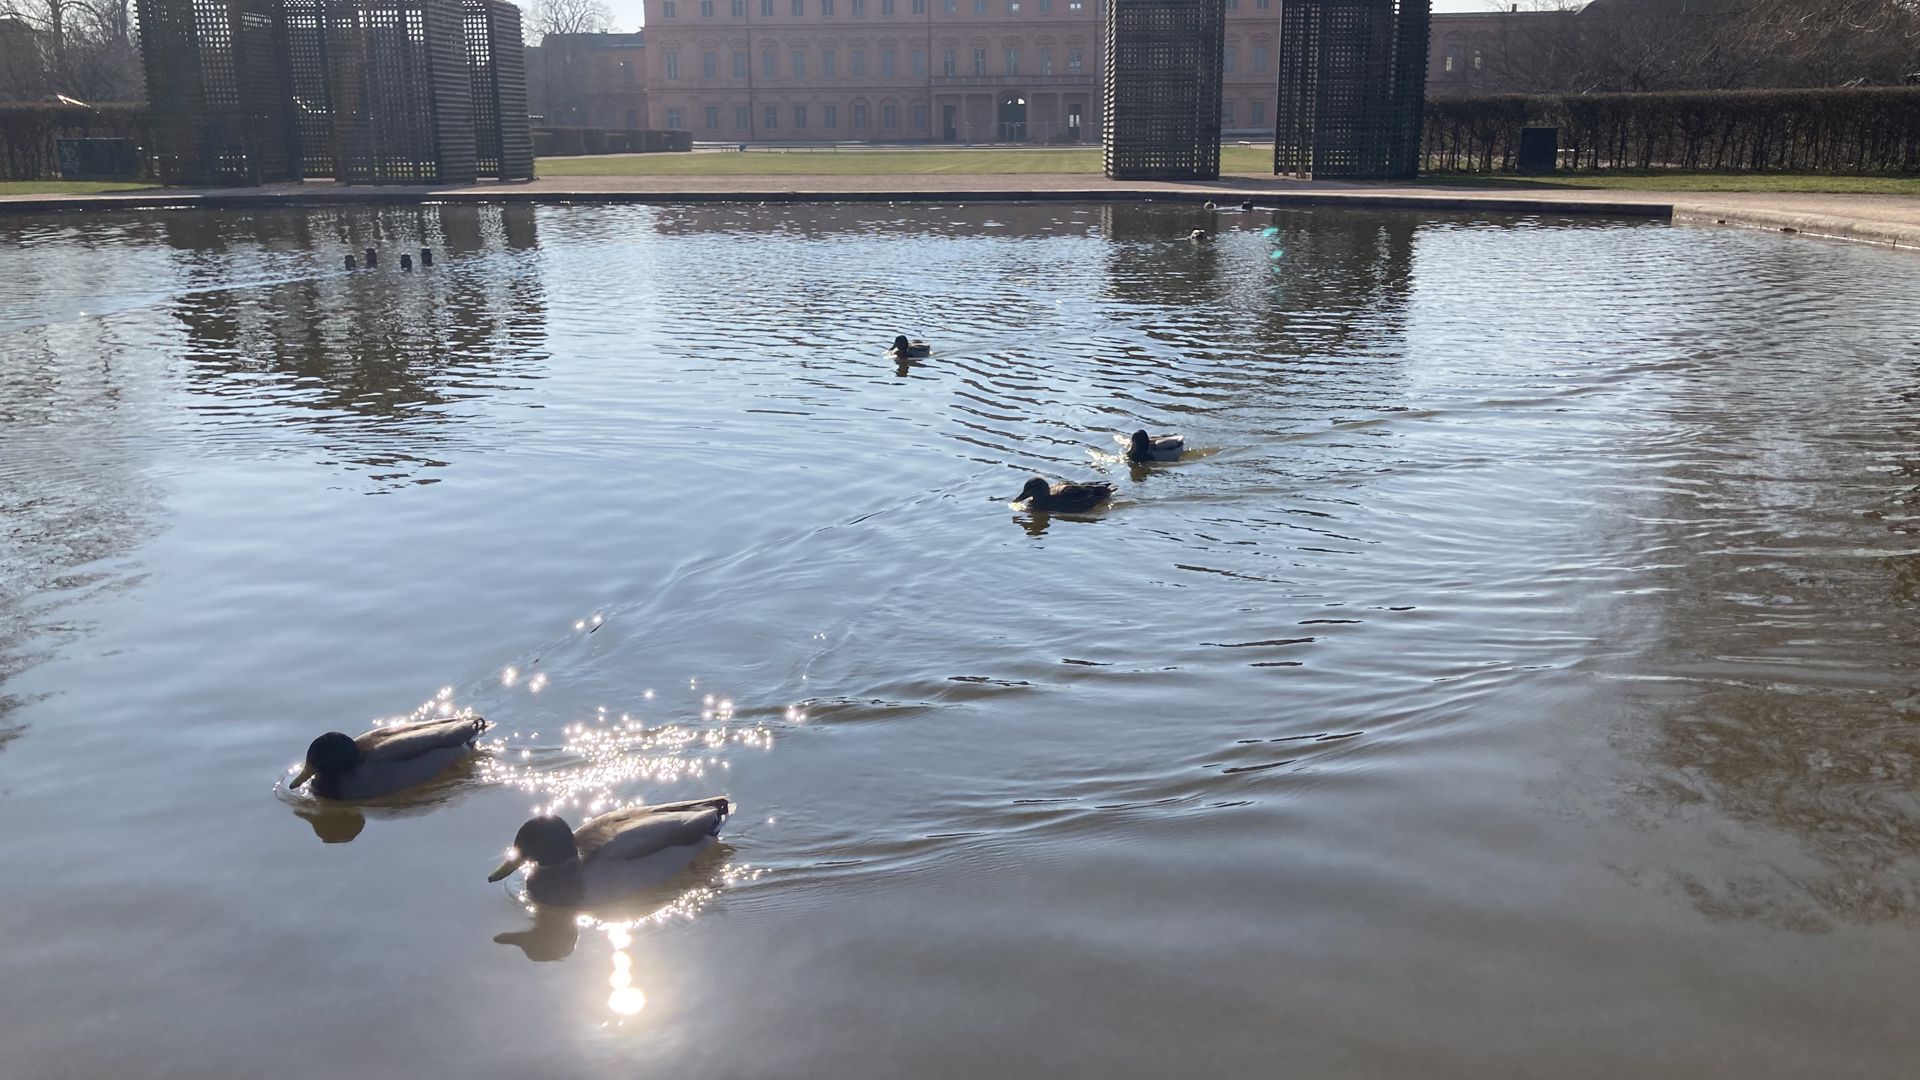 Enten schwimmen auf einem Teich, im Hintergrund ist ein Schloss zu sehen